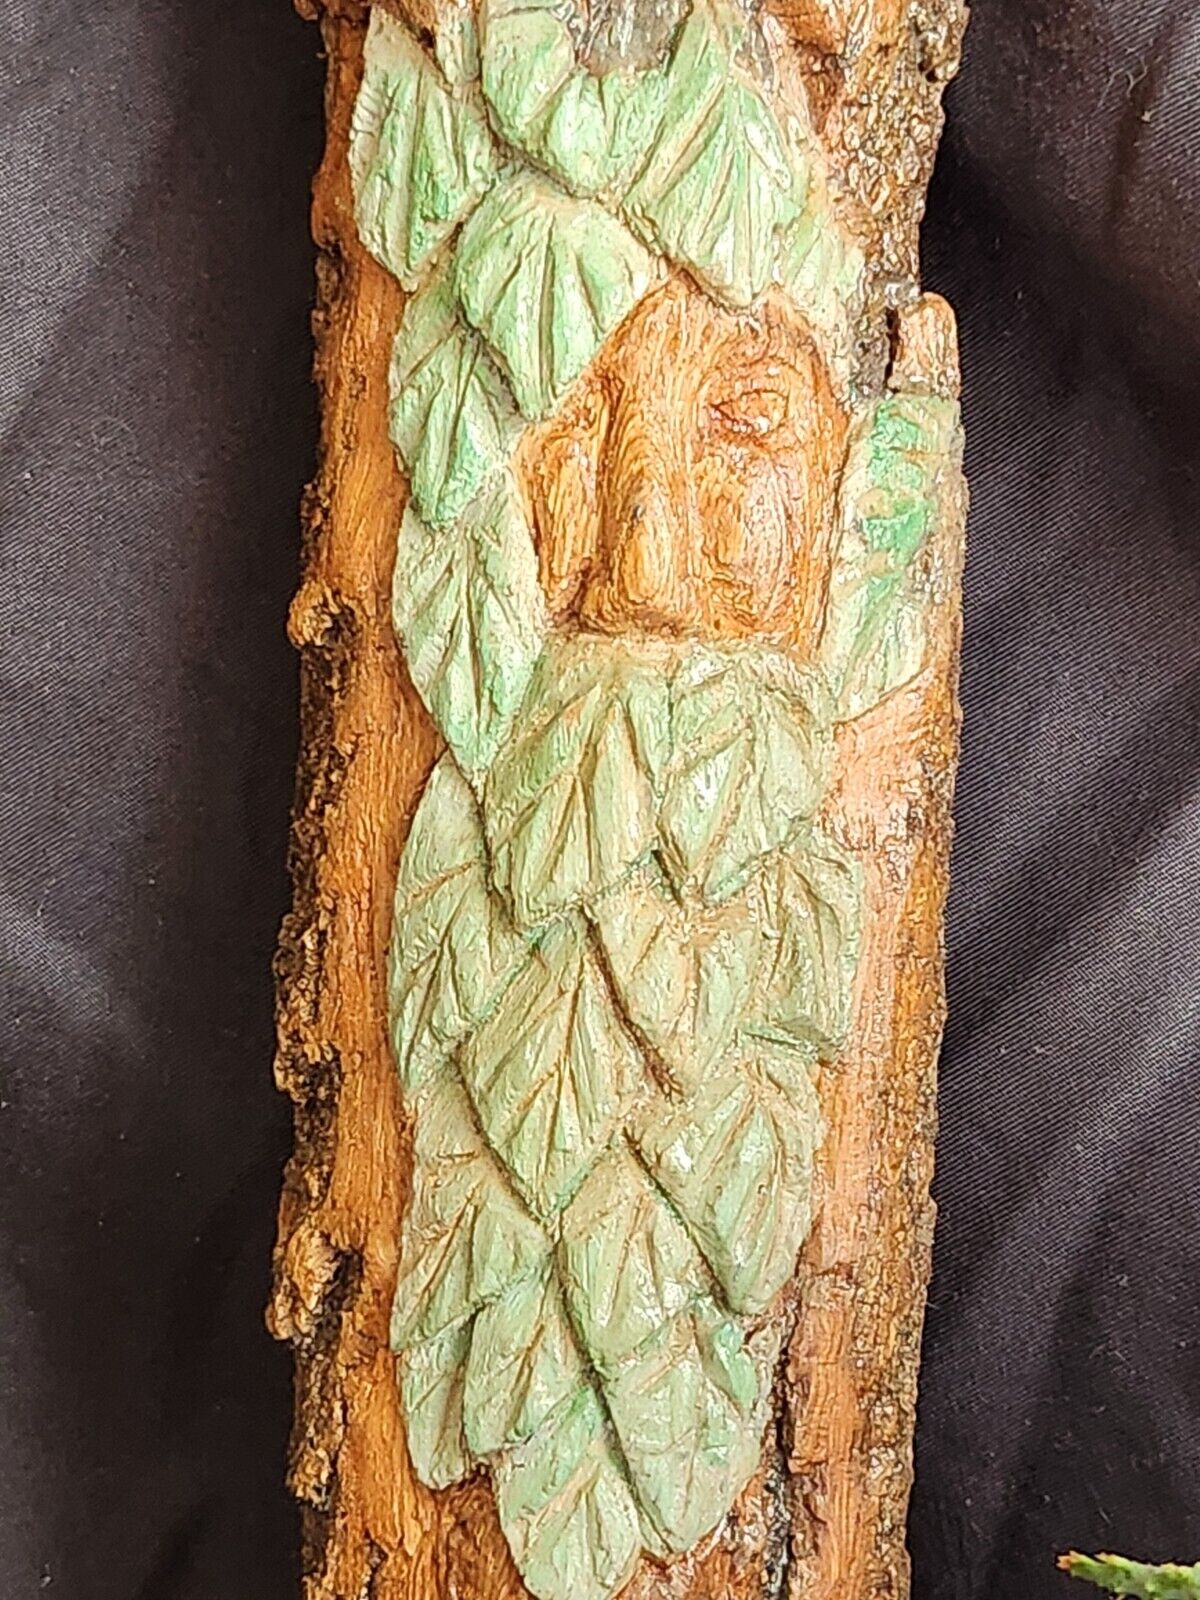 Greenman/Wood Spirit Carving